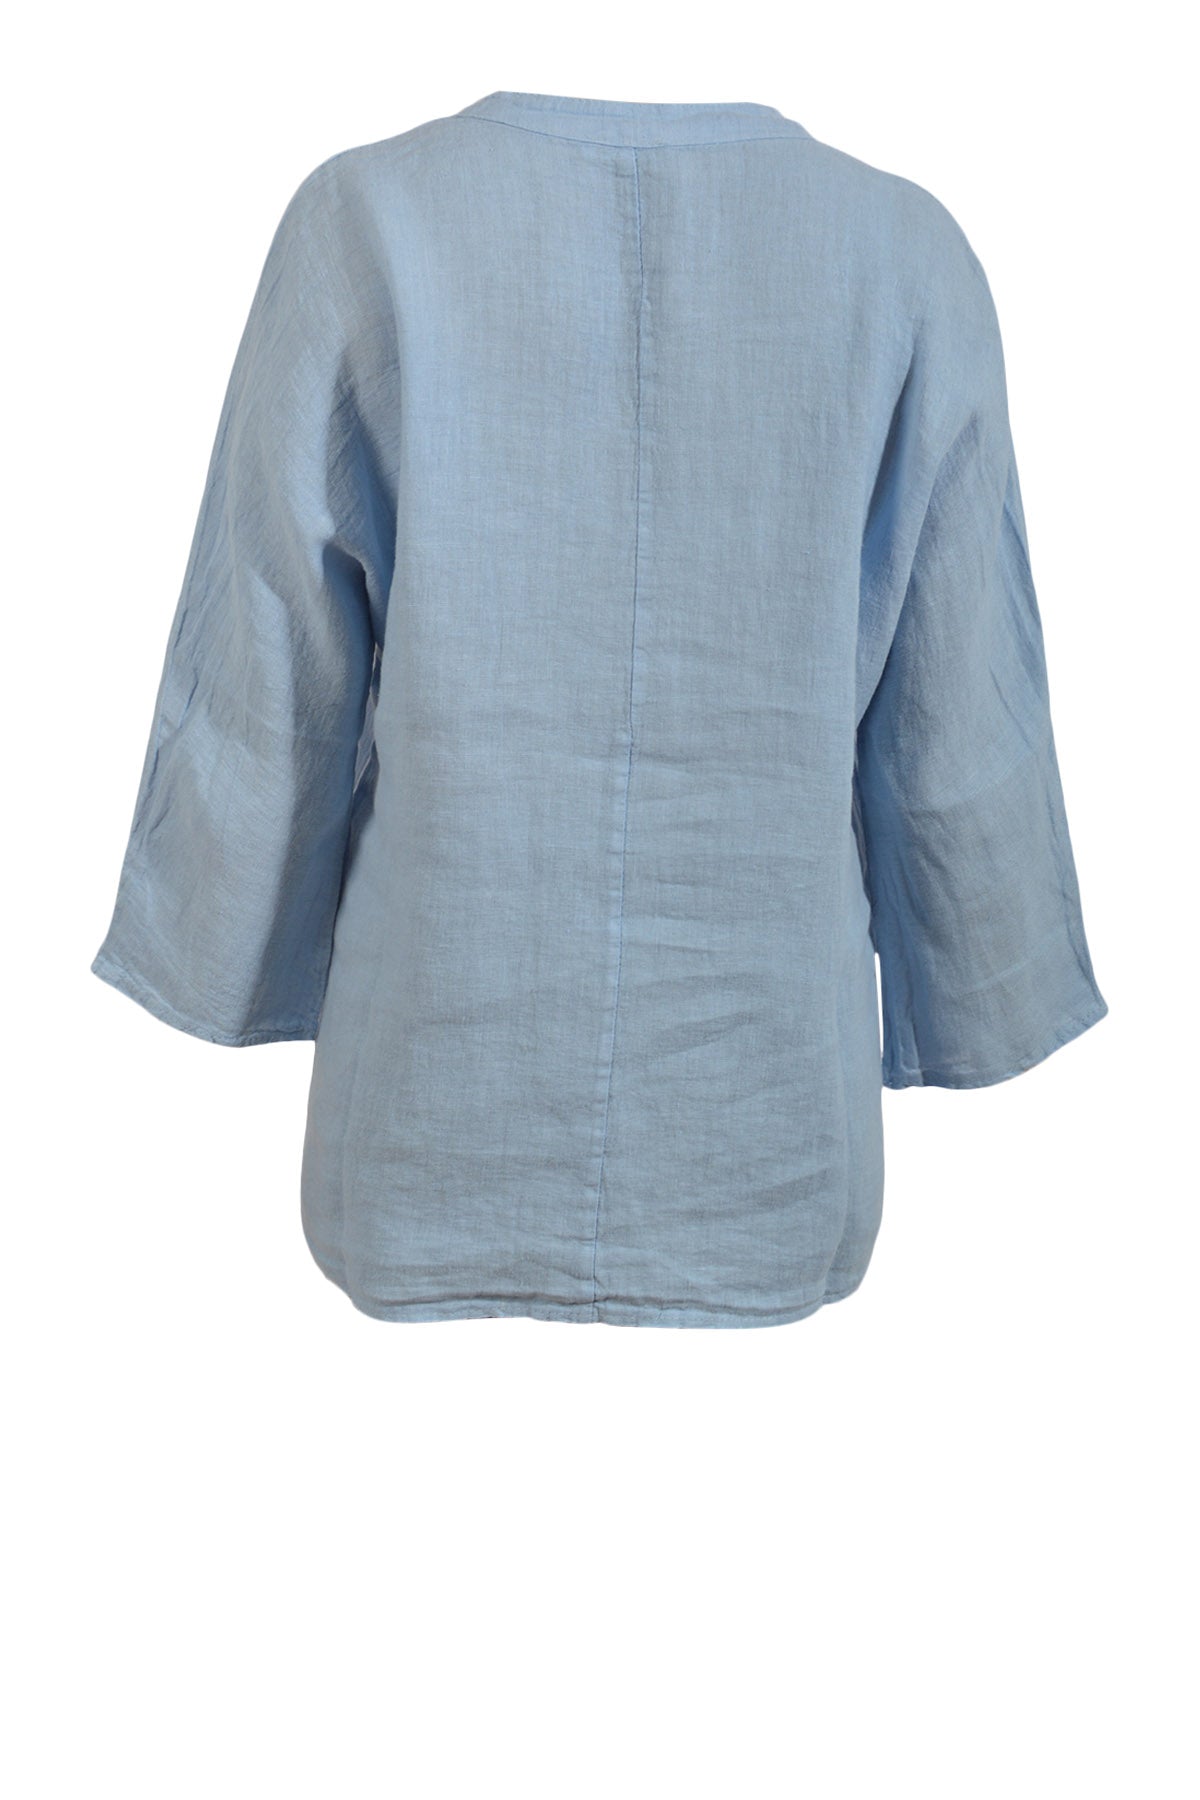 Bøjle 96 - Piro bluse i hør PI0100, Blå